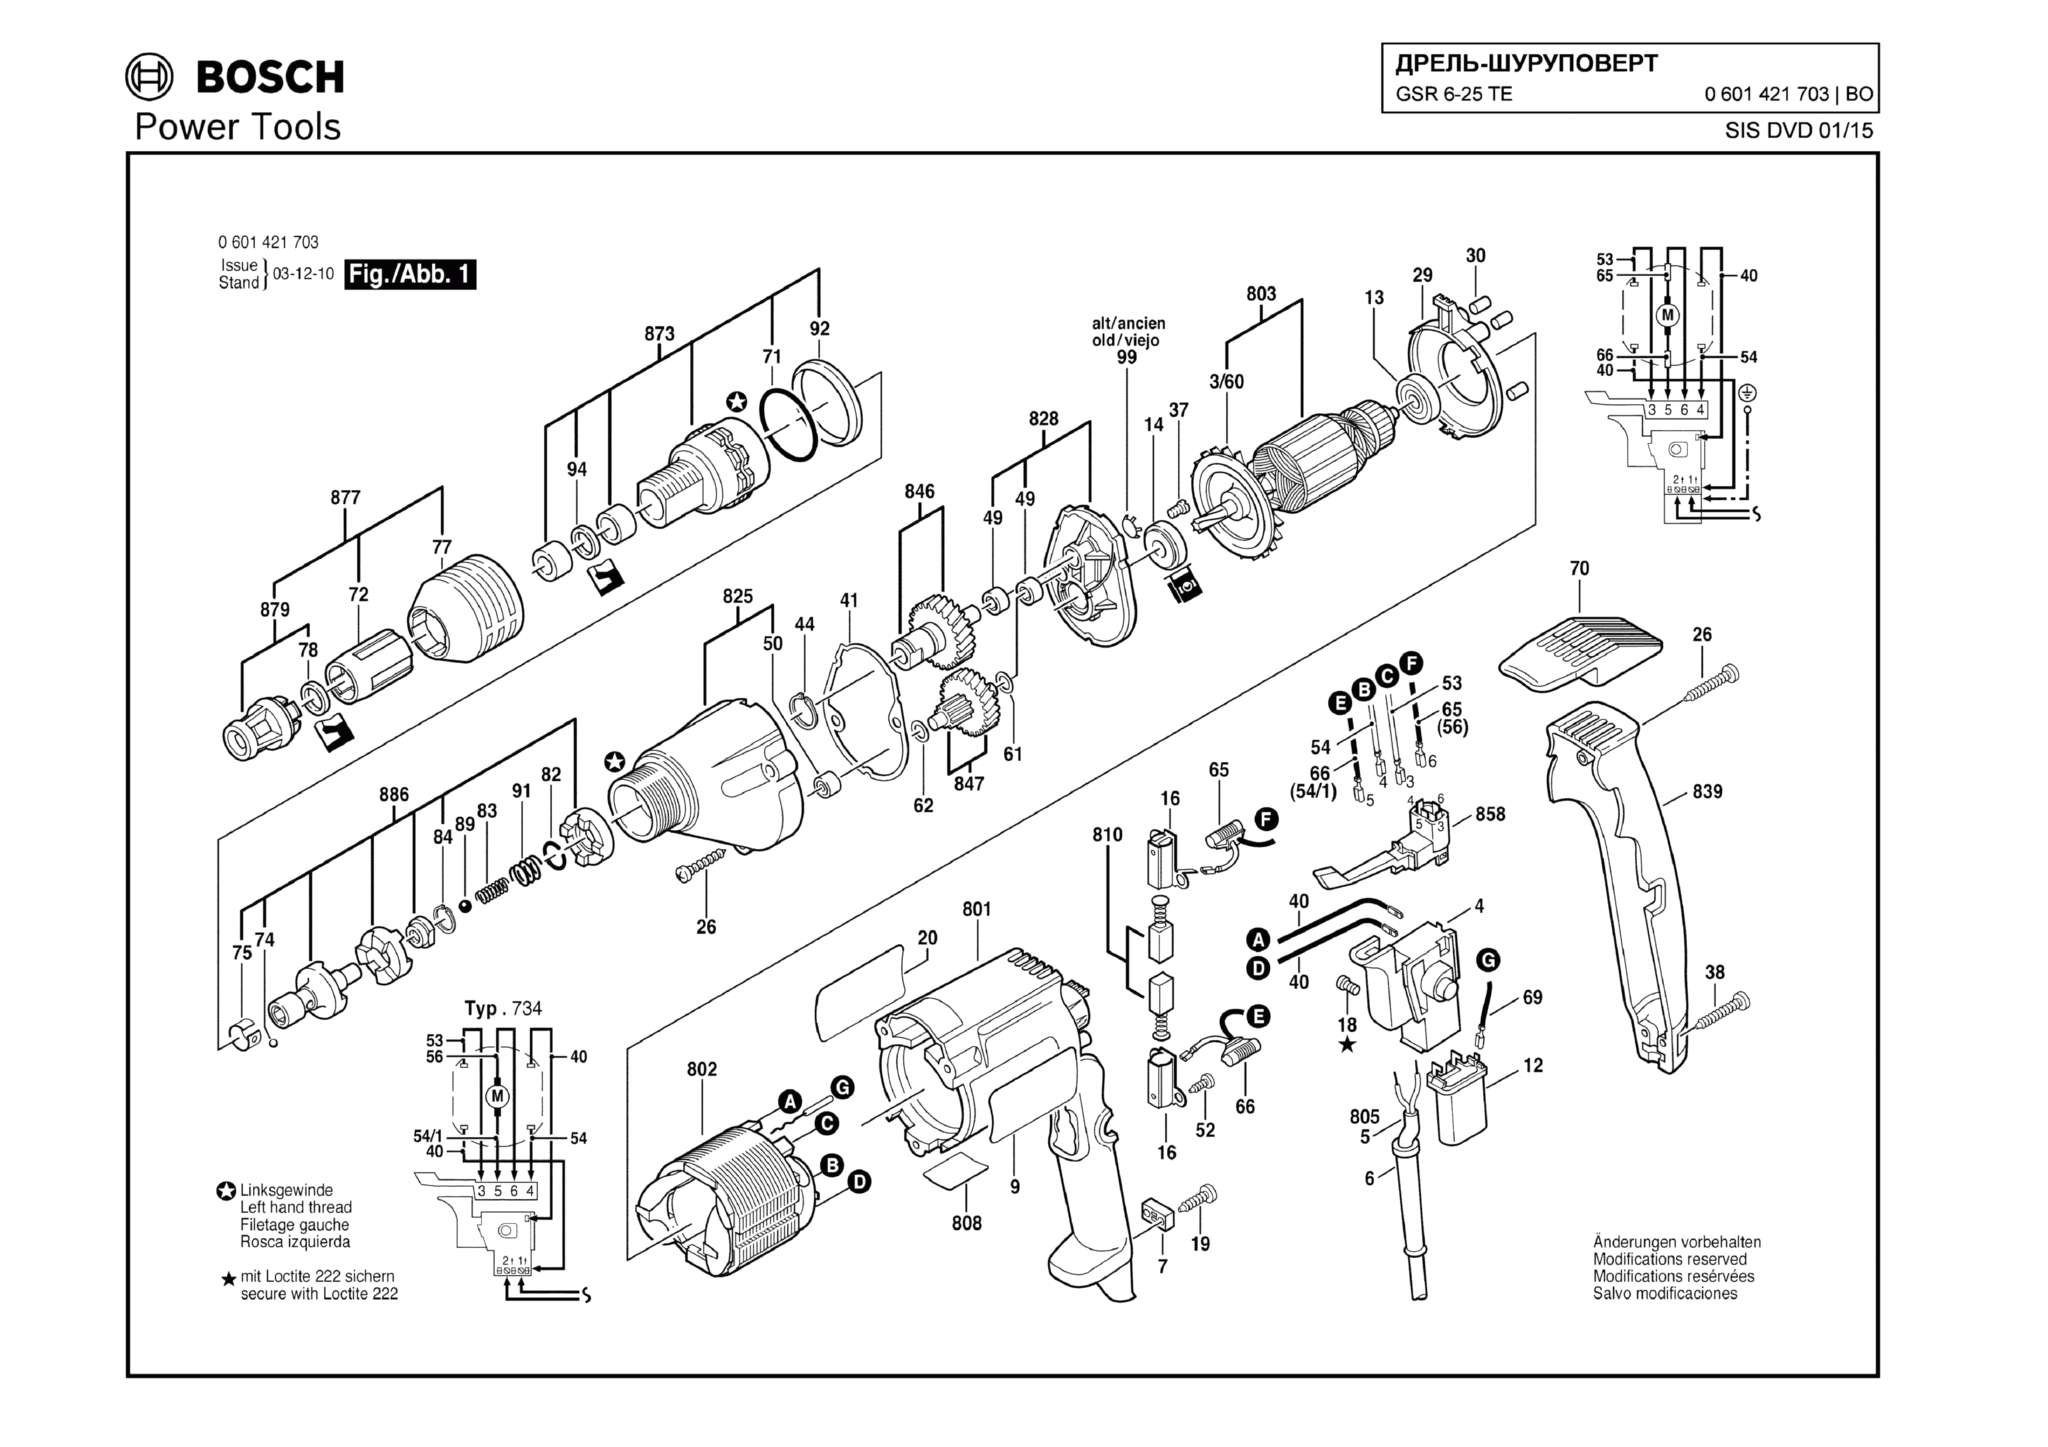 Запчасти, схема и деталировка Bosch GSR 6-25 TE (ТИП 0601421703)